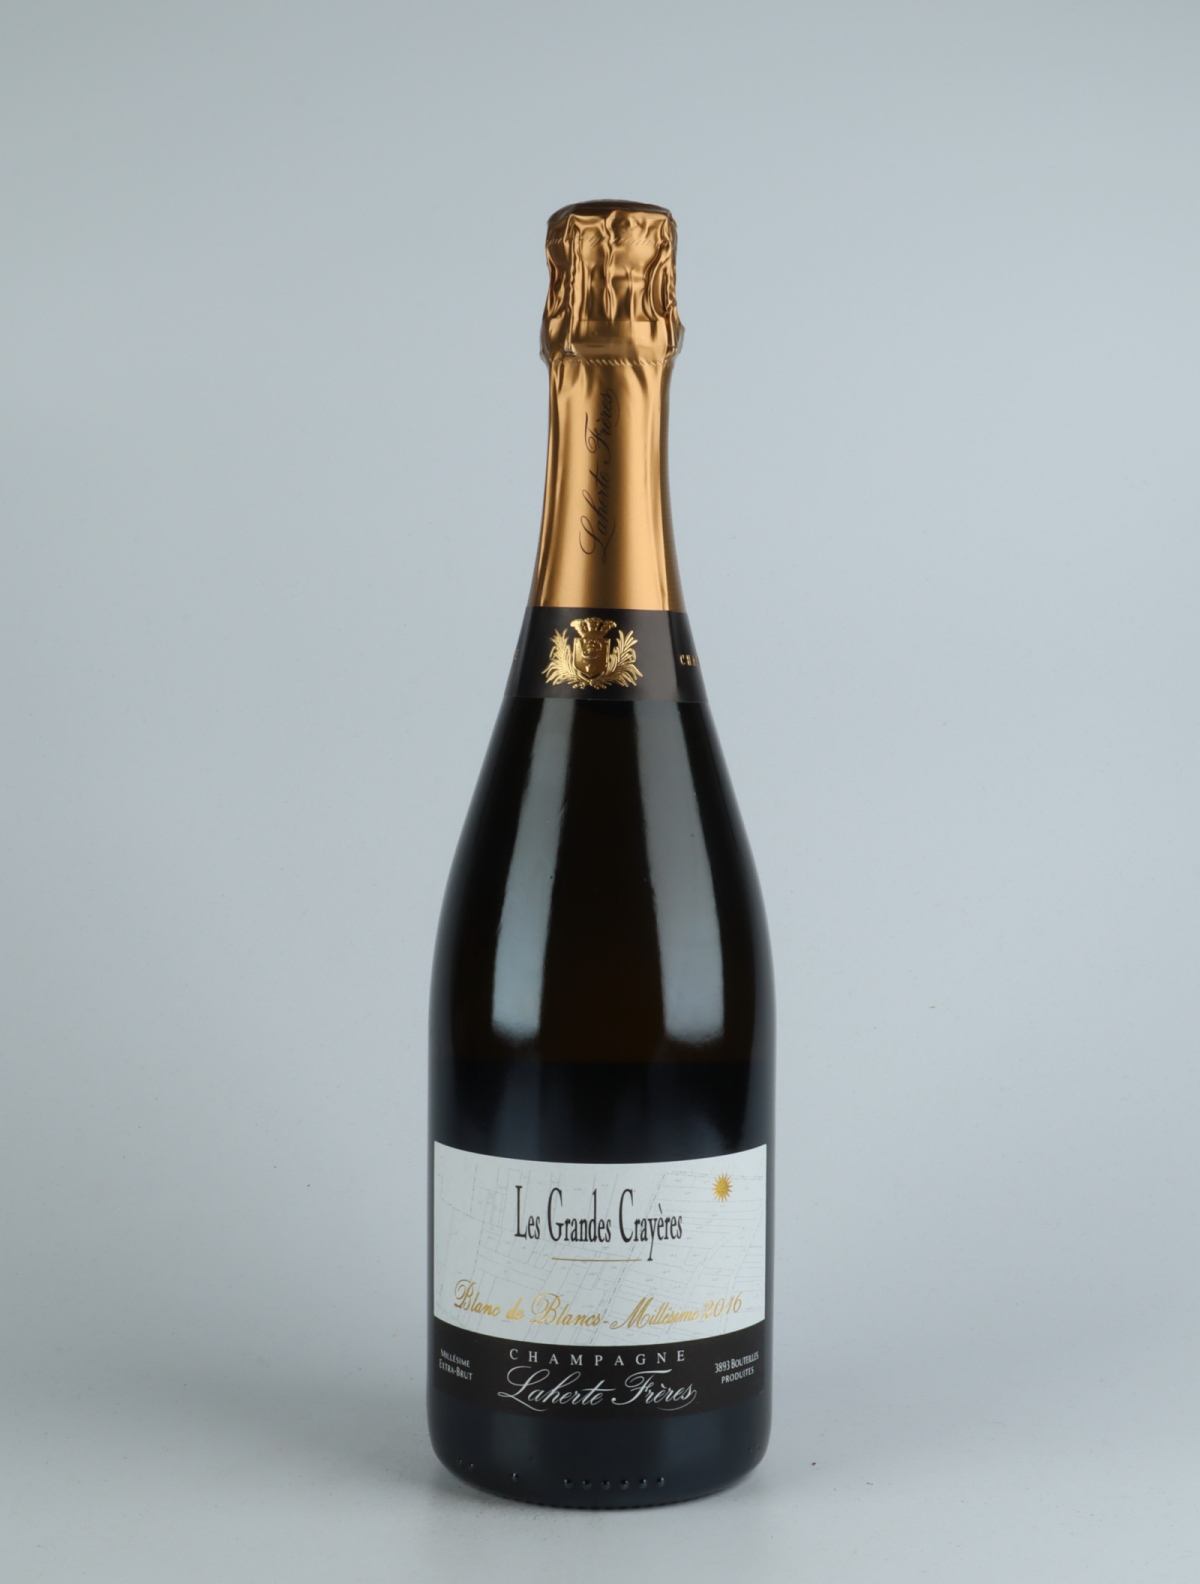 En flaske 2016 Les Grandes Crayeres Mousserende fra Laherte Frères, Champagne i Frankrig